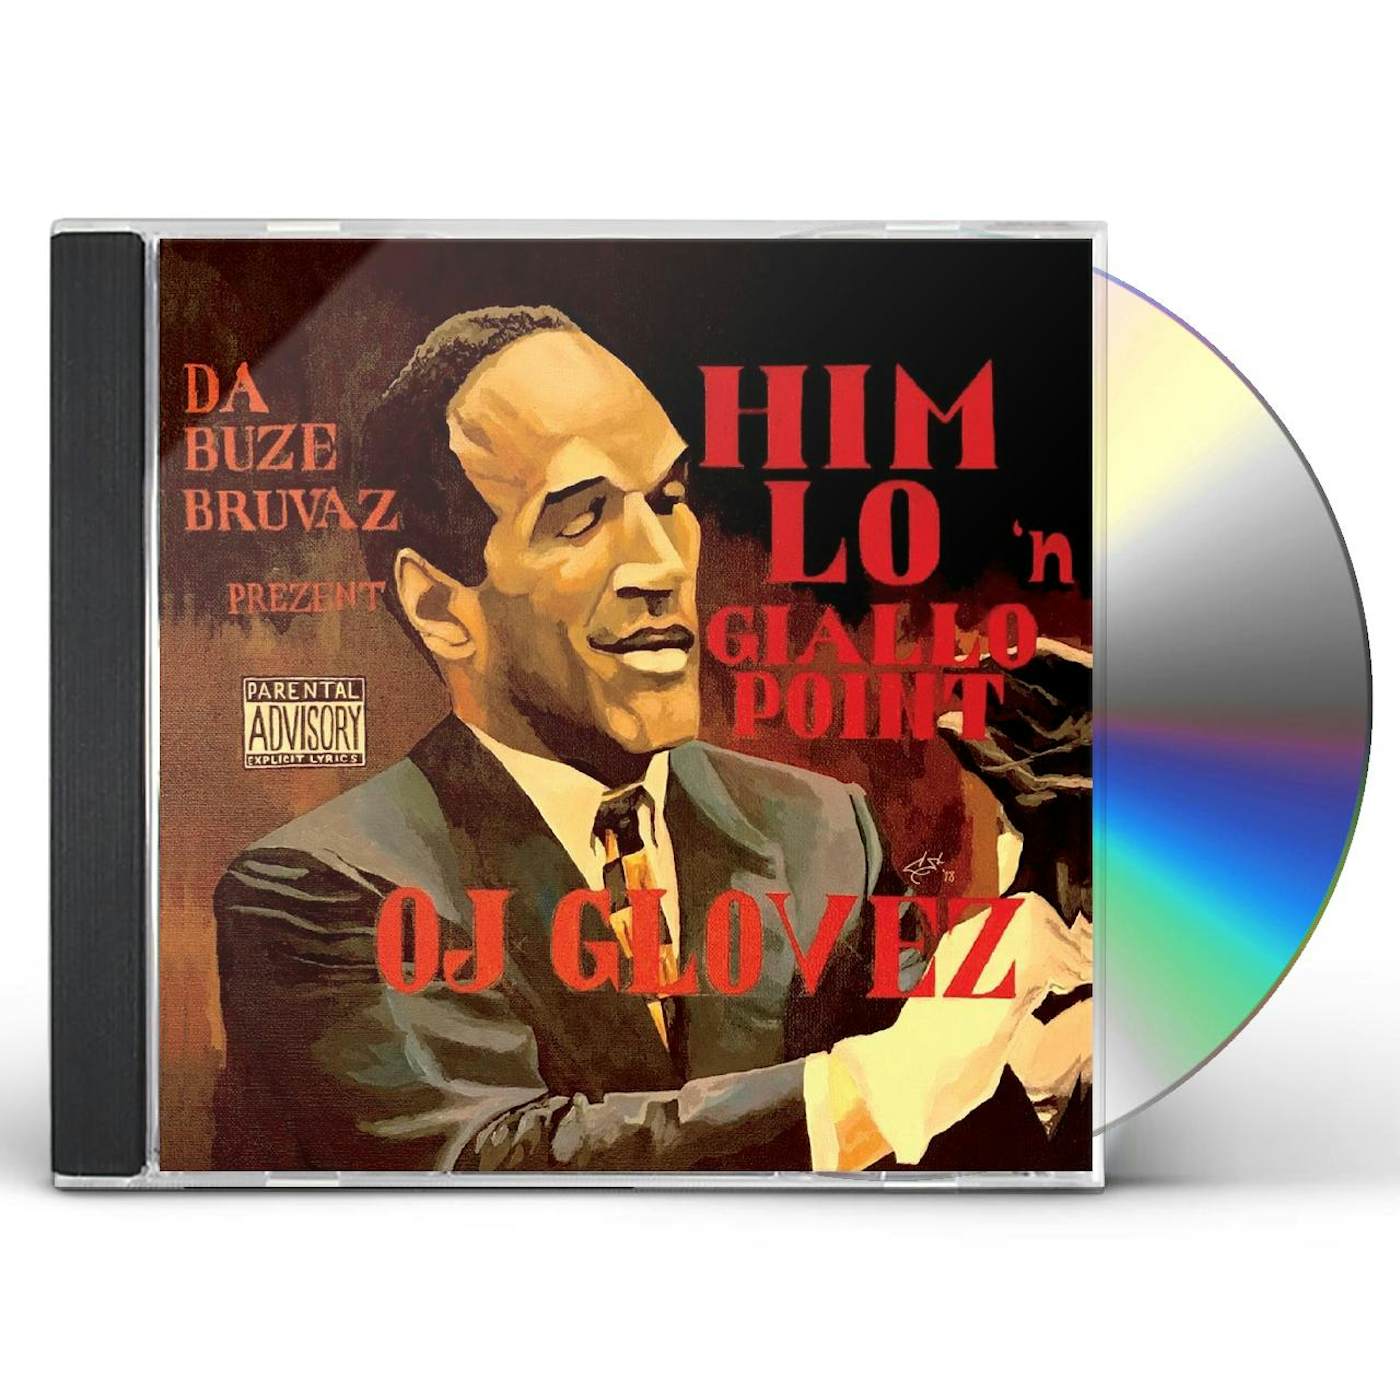 Da Buze Bruvaz Prezent: Him Lo & Giallo Point OJ GLOVEZ CD